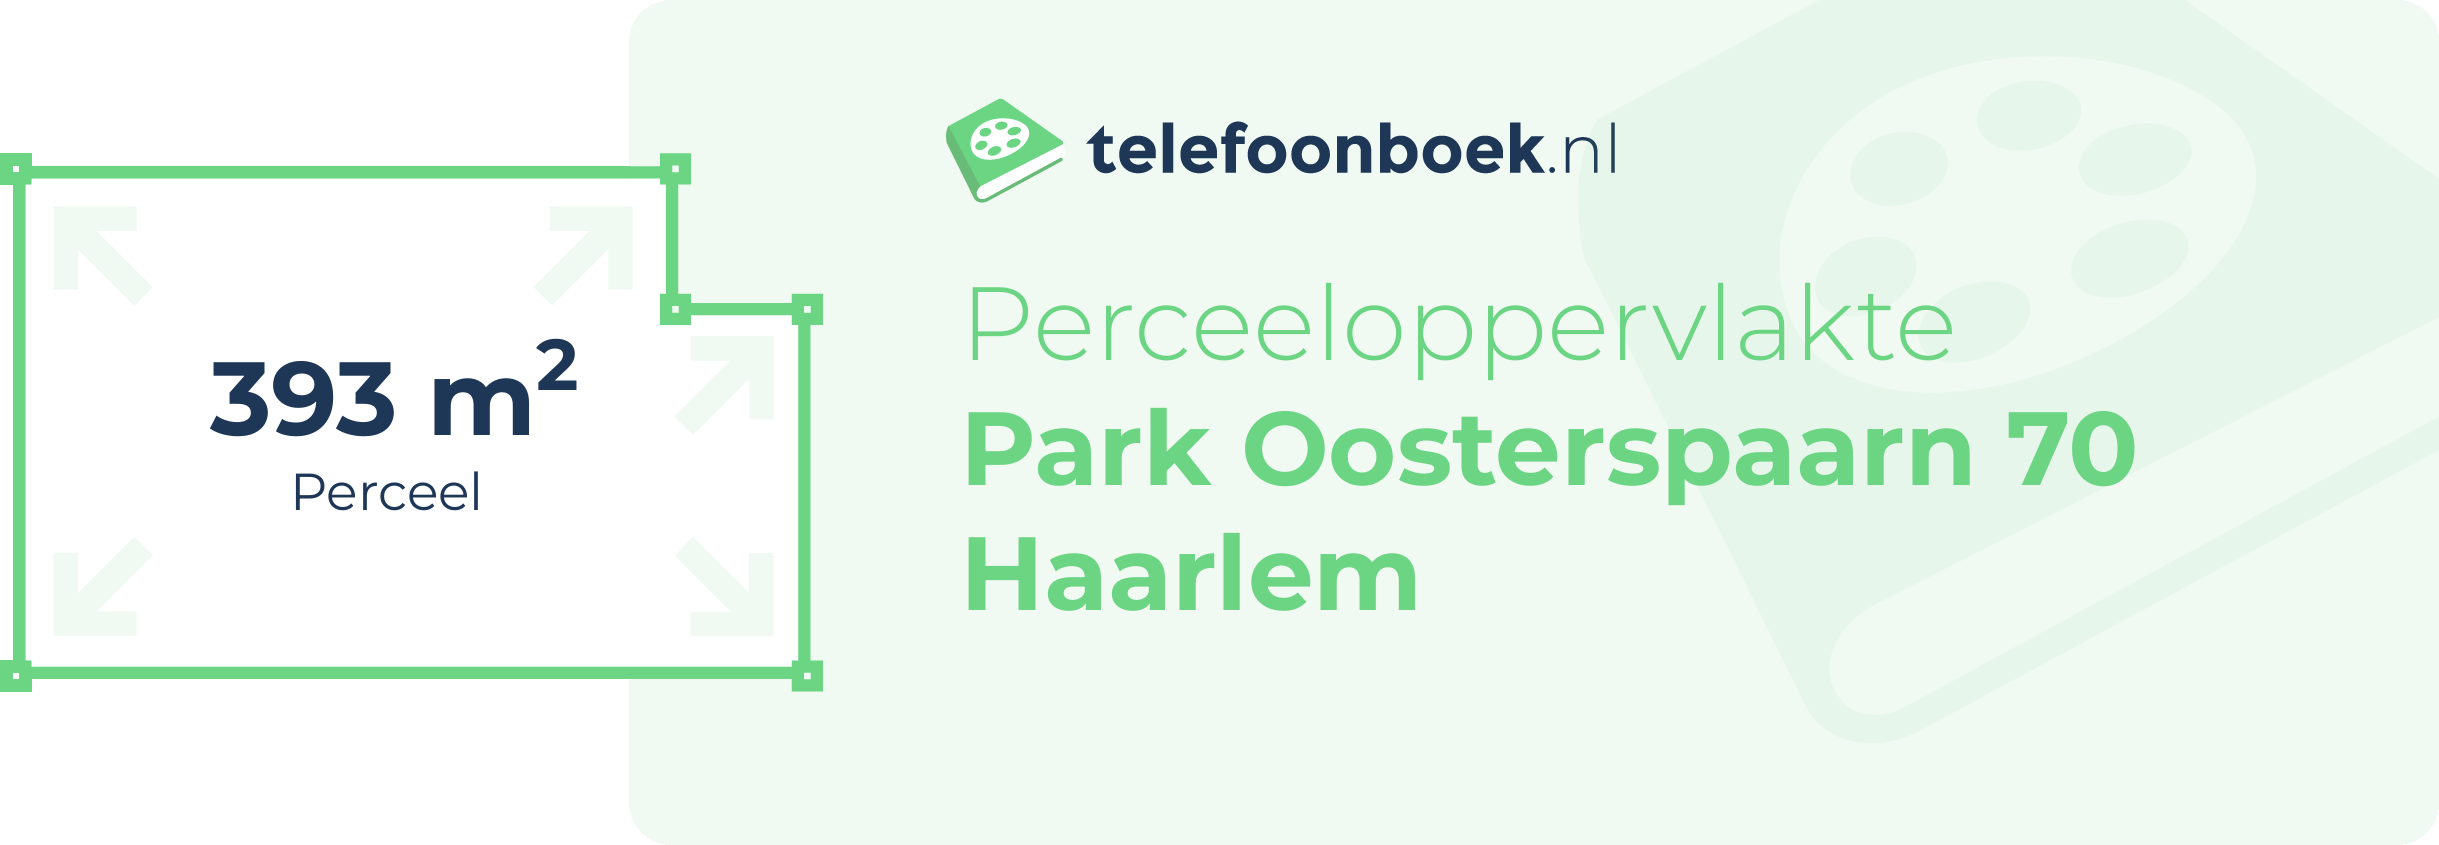 Perceeloppervlakte Park Oosterspaarn 70 Haarlem